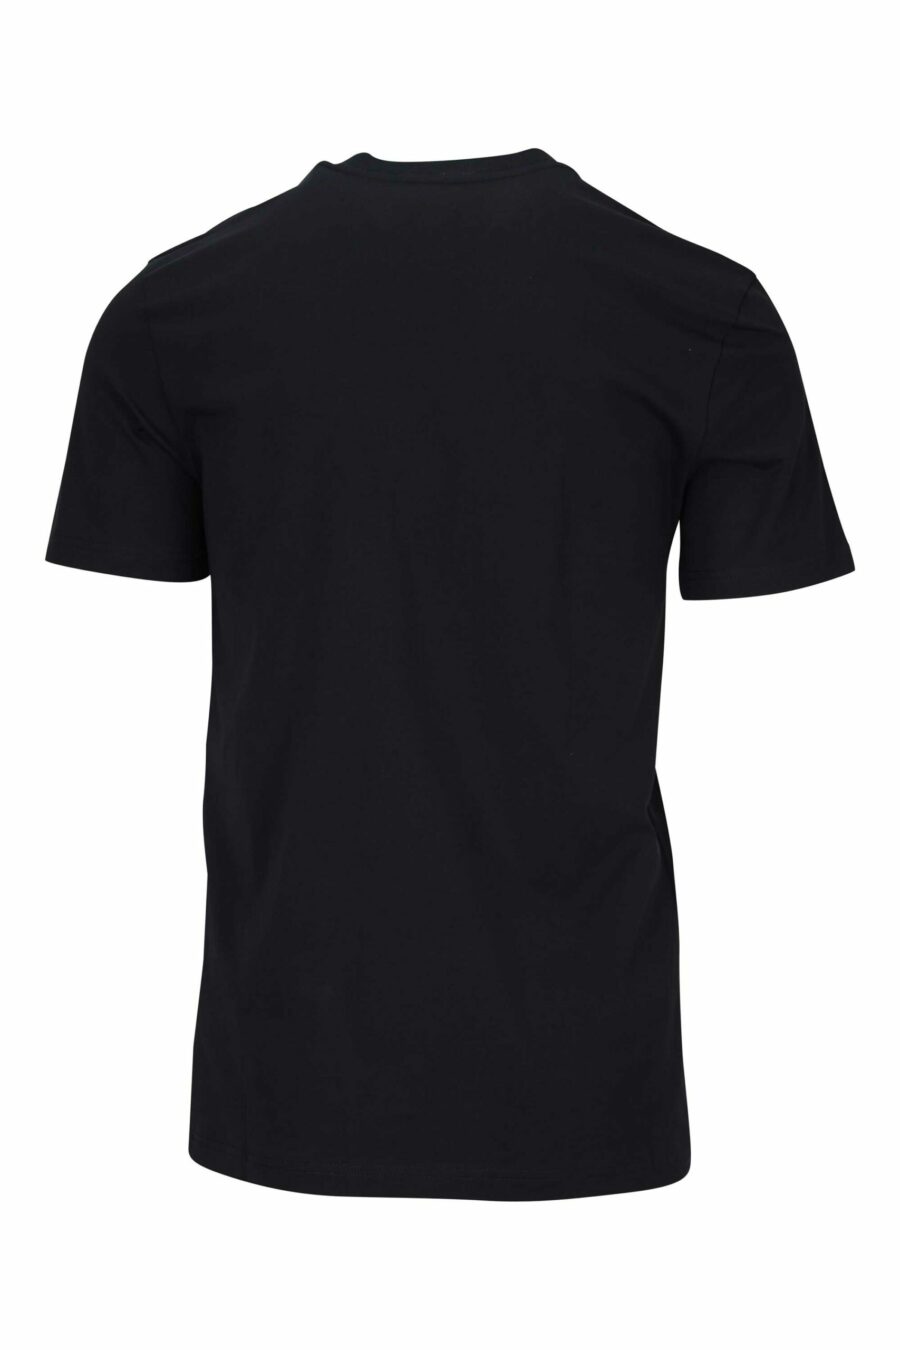 Camiseta negra con minilogo "teddy" bordado - 667113455549 1 scaled